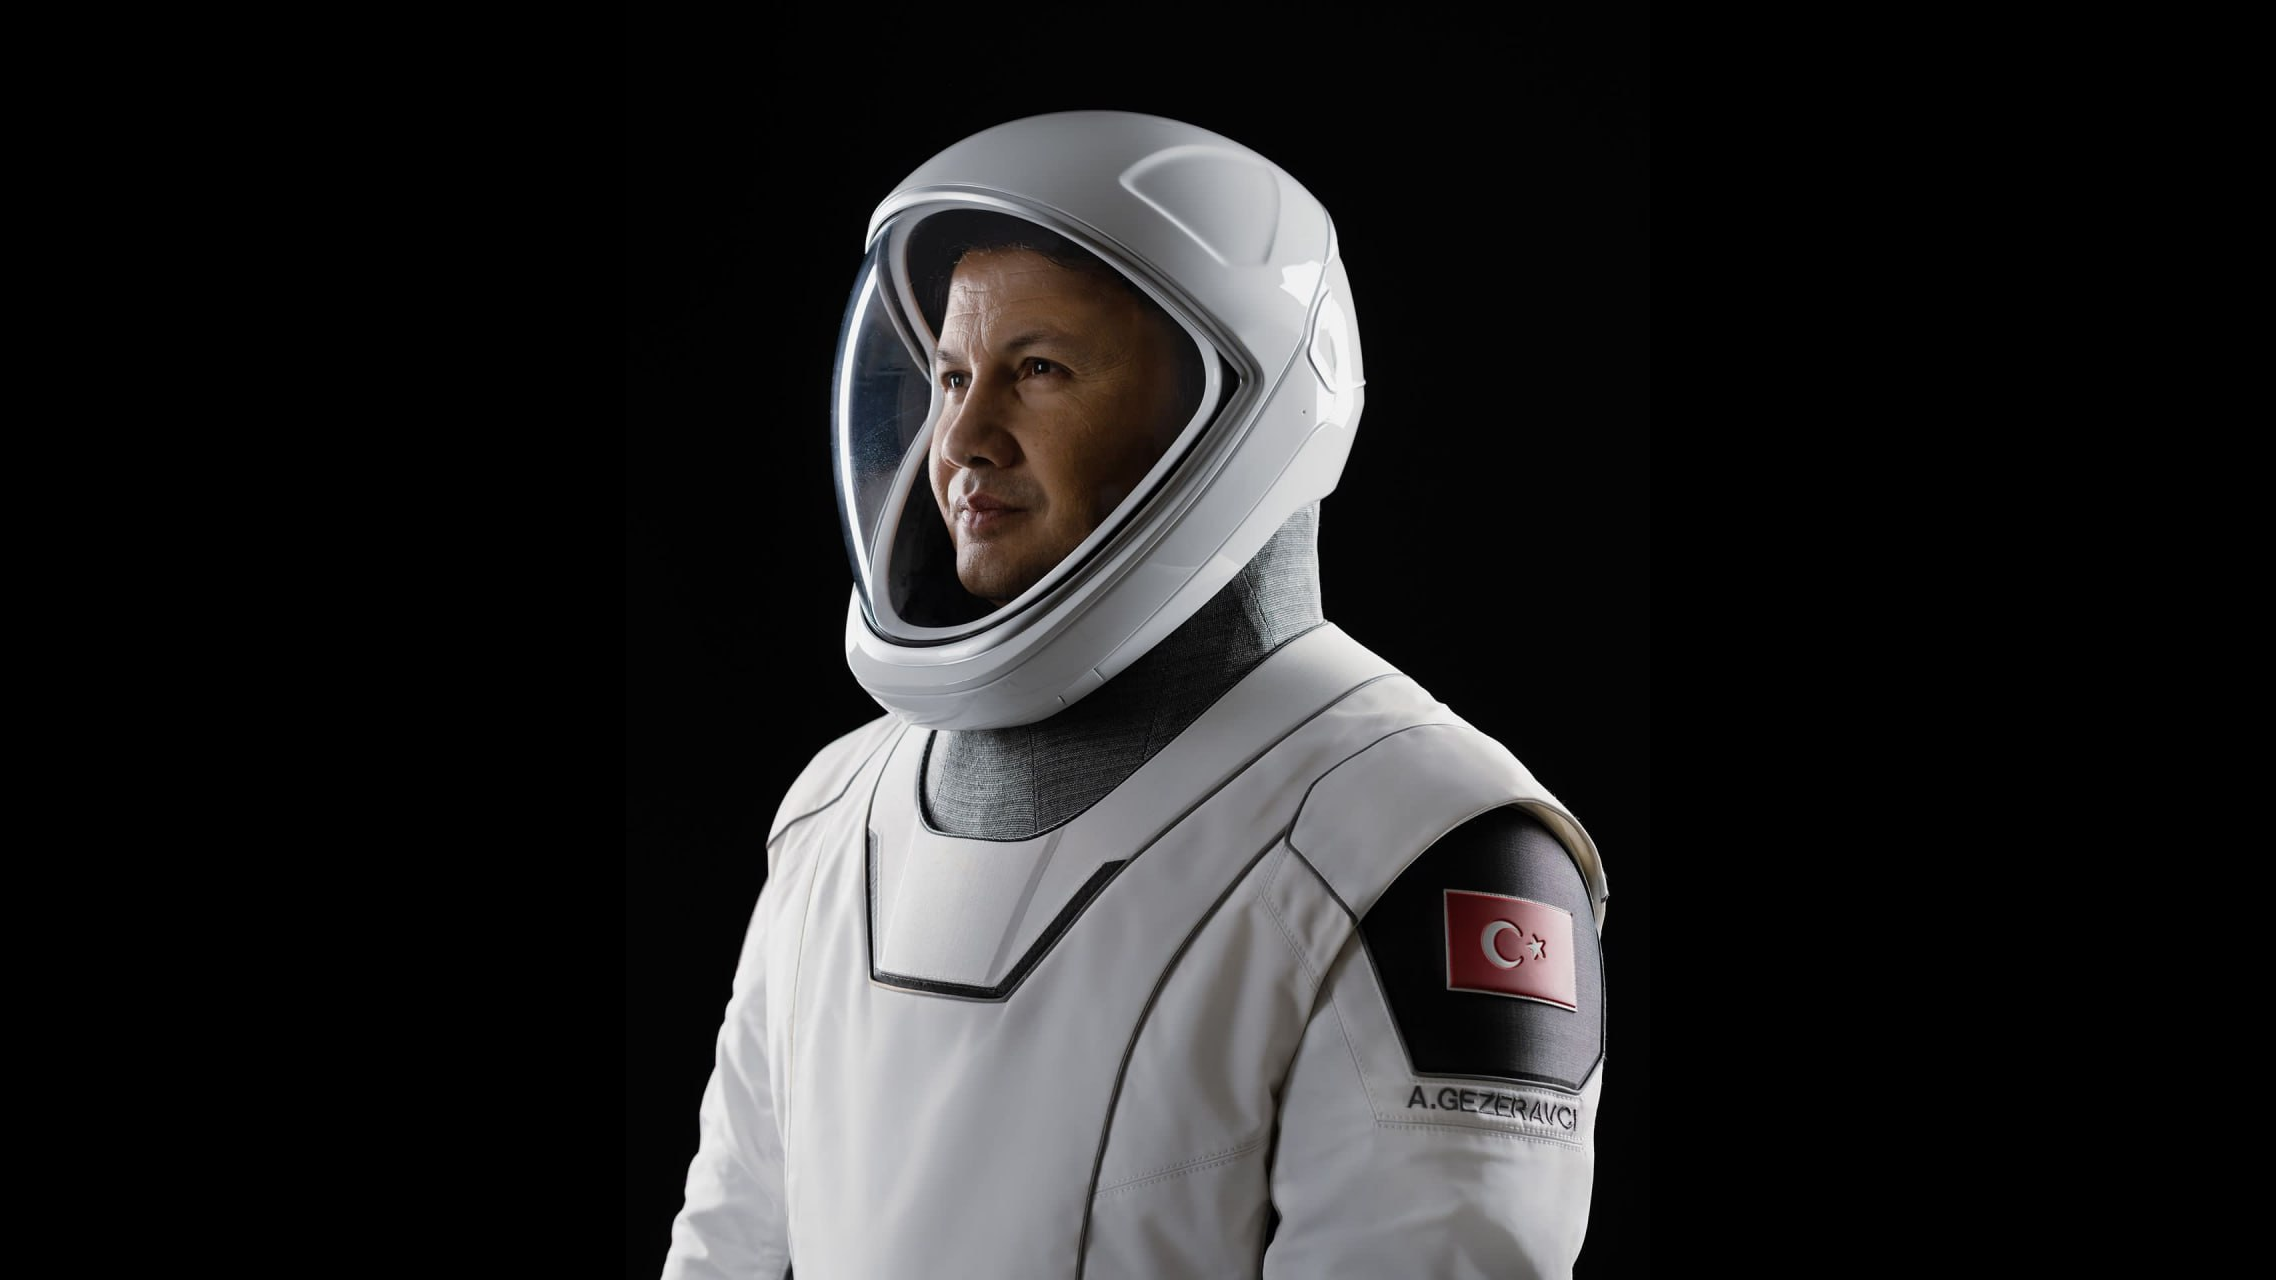 Tarixdə İLK: Türk astronavt kosmosa uçmağa hazırdır - FOTO/VİDEO